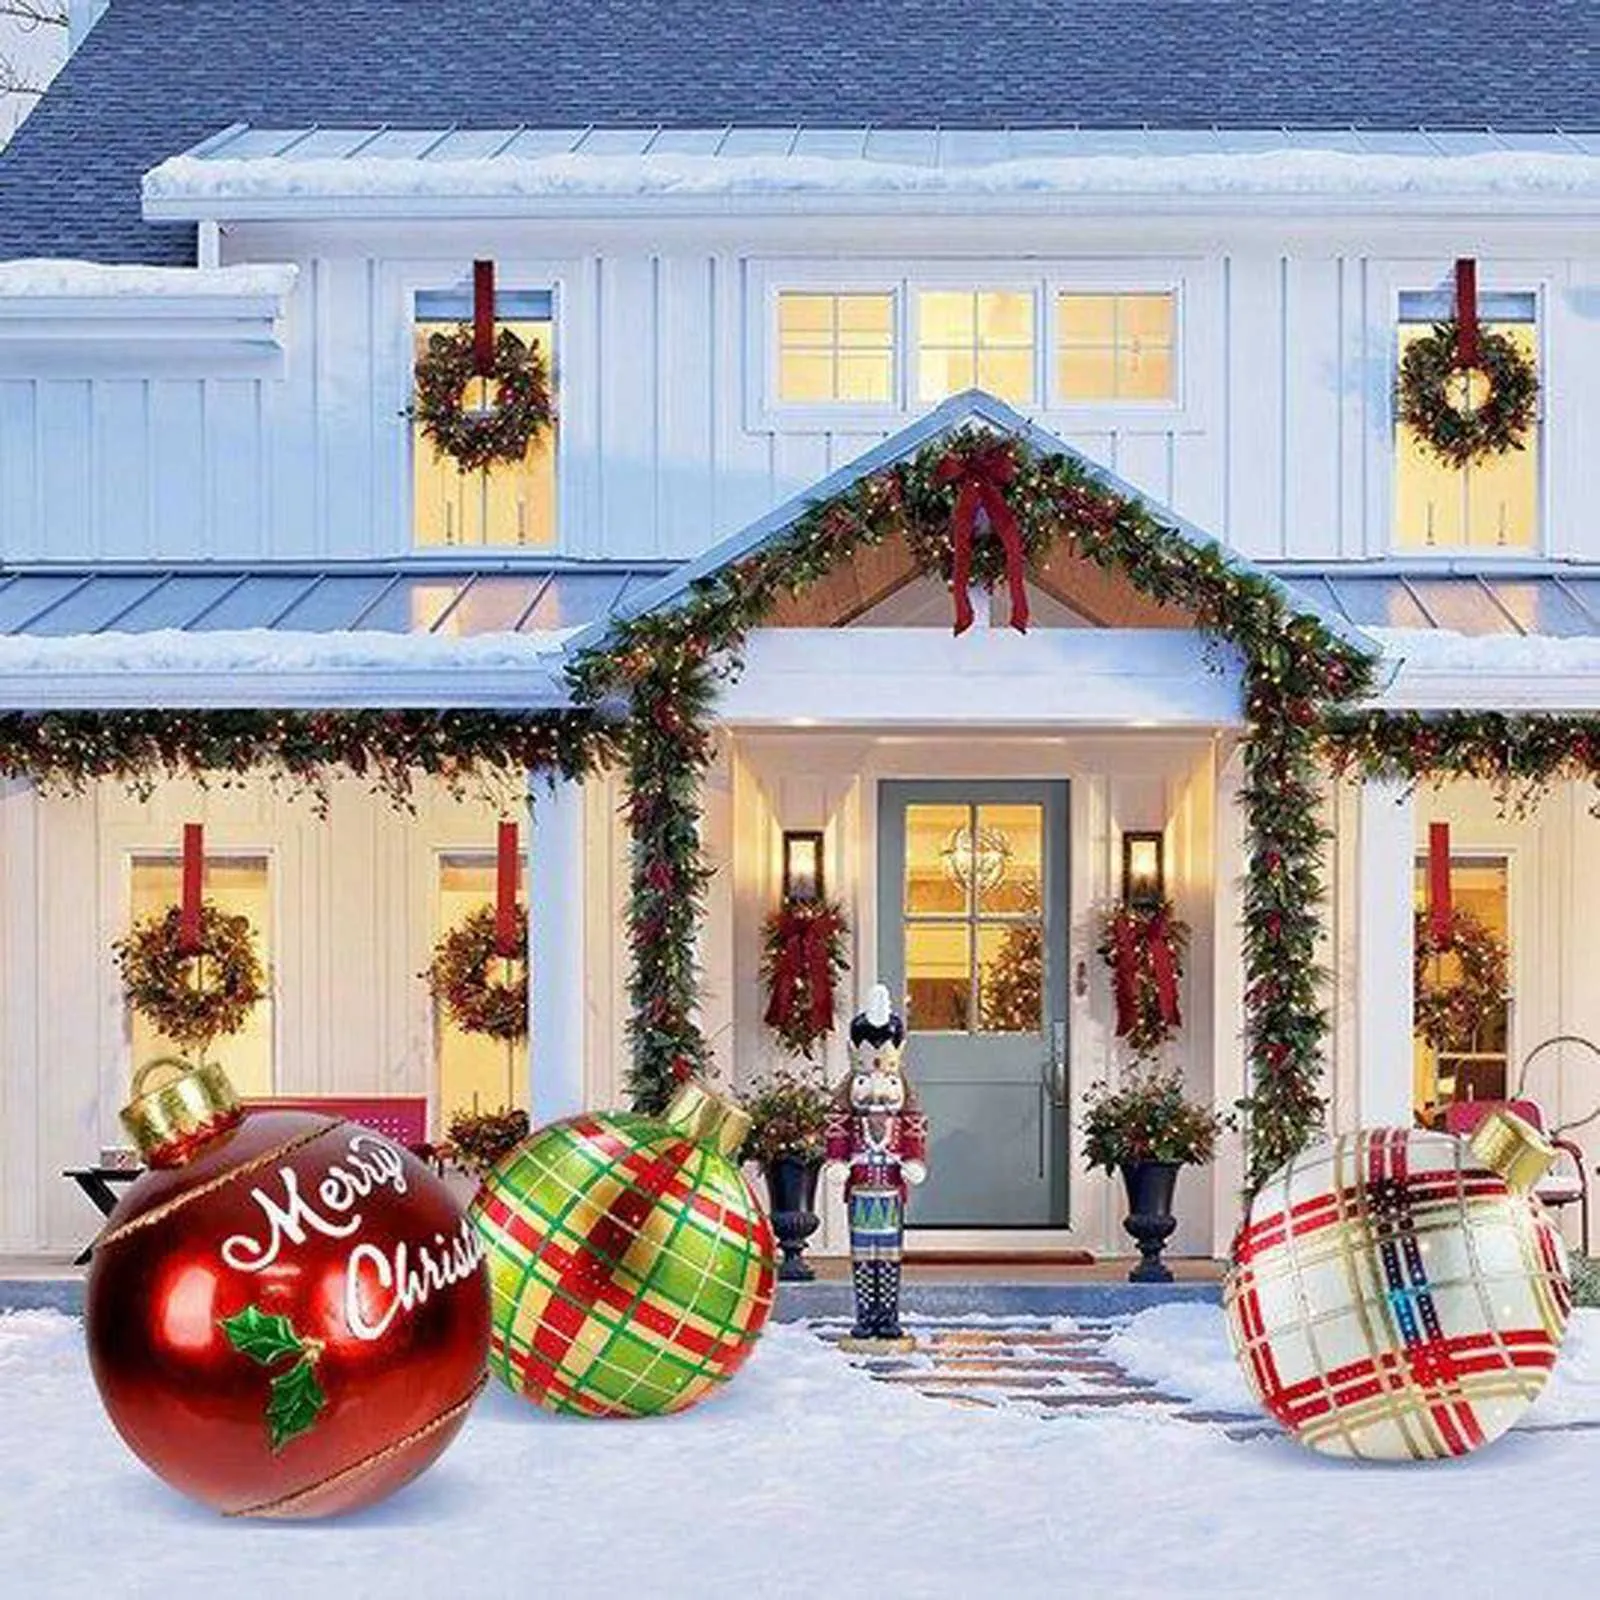 Aufblasbare Weihnachtskugel aus PVC, bunt, lustig, Spielzeug, Baumdekoration, Heim- und Außendekoration, Weihnachtsgeschenk, 60 cm